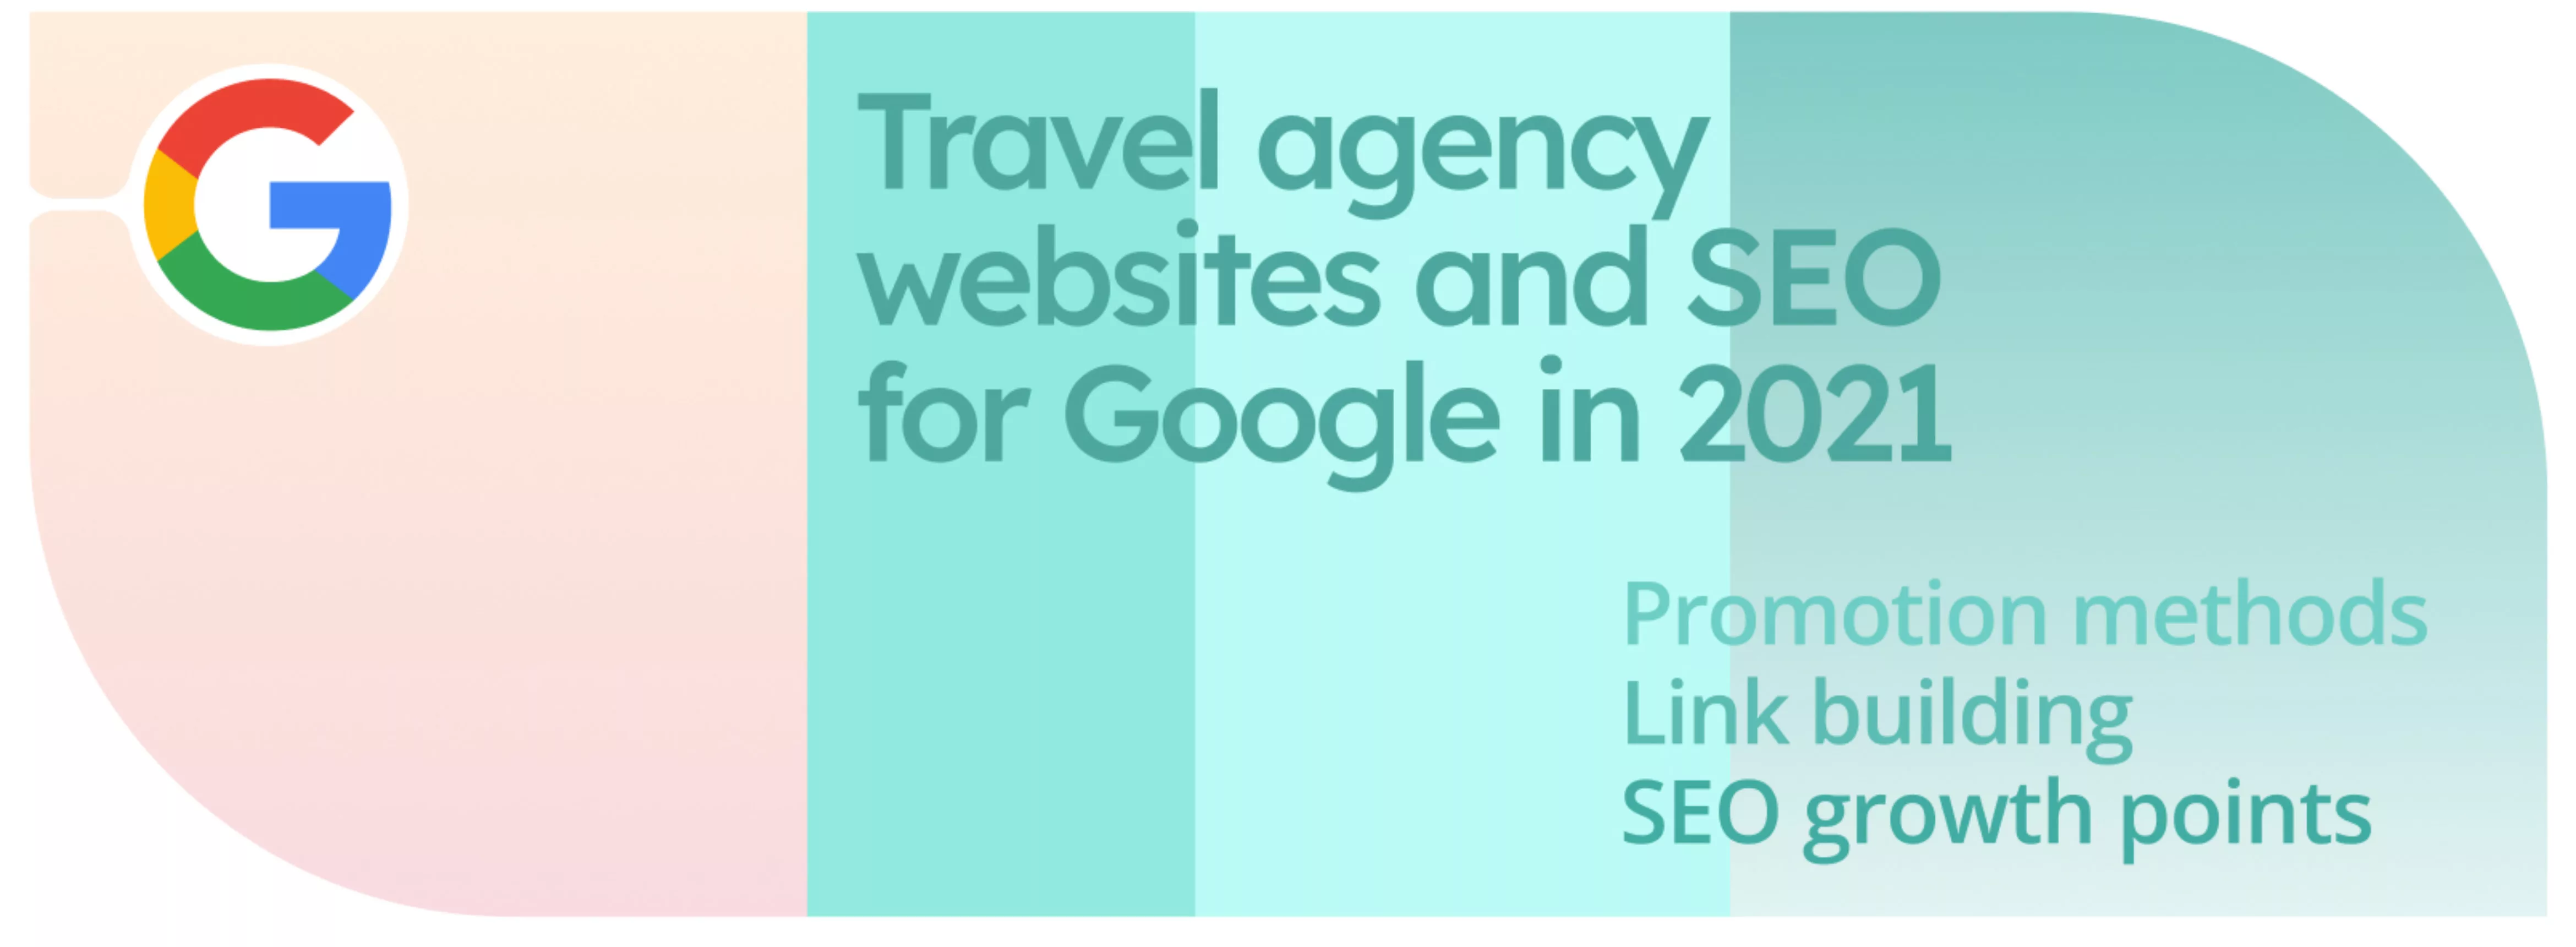 Websites van reisbureaus en SEO voor Google in 2021